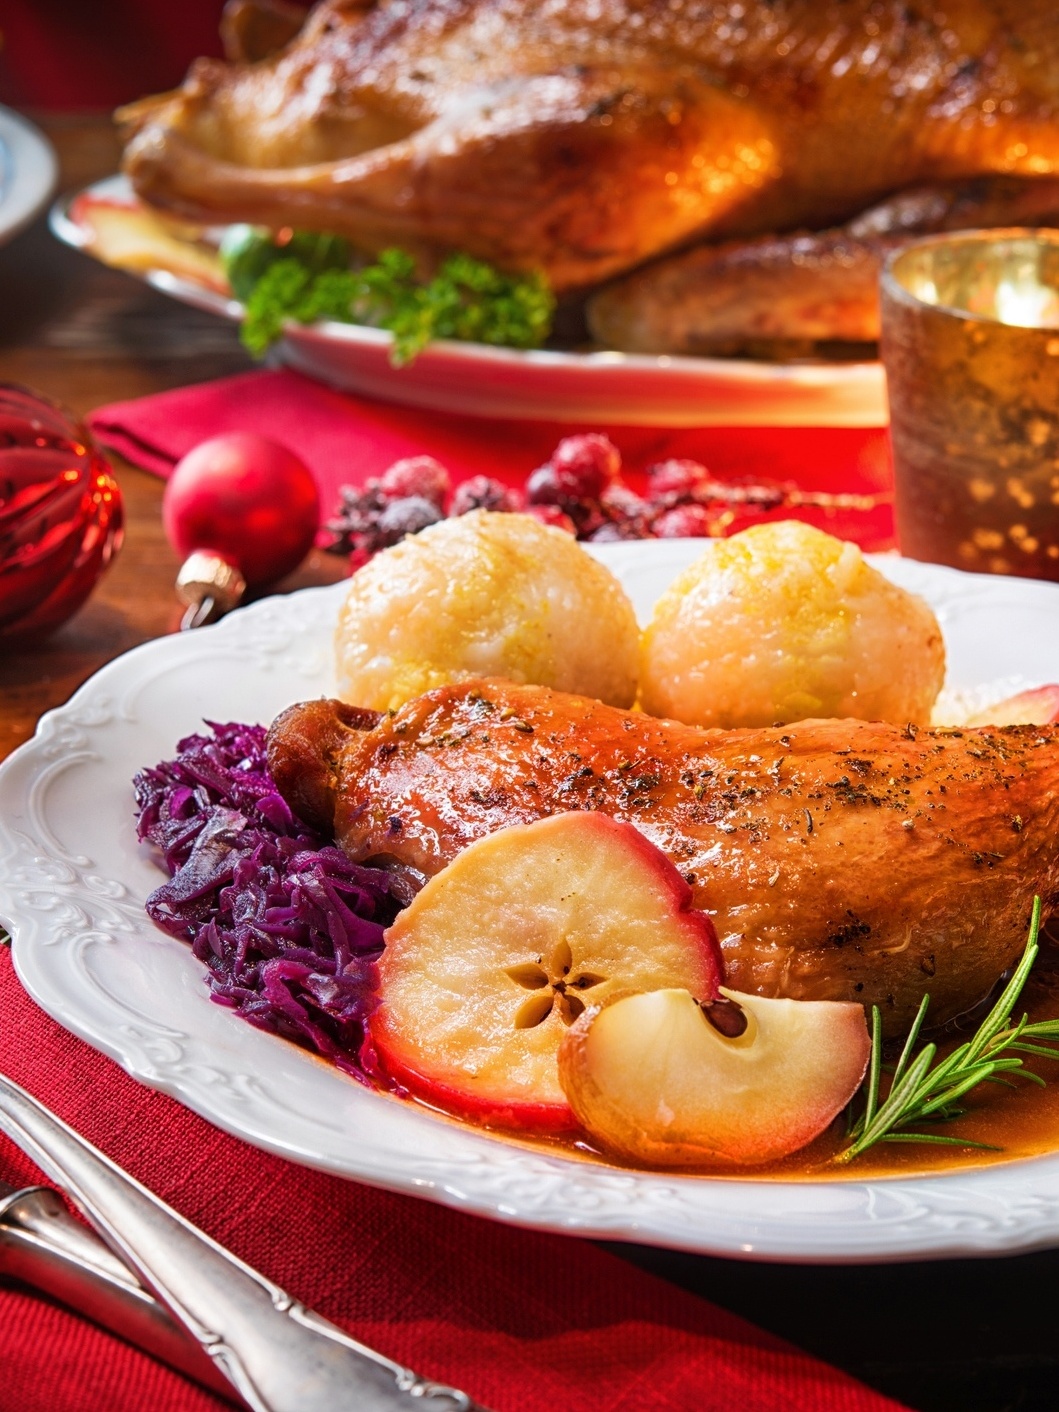 Ceia de Natal 6 receitas típicas da culinária alemã para celebrar foto